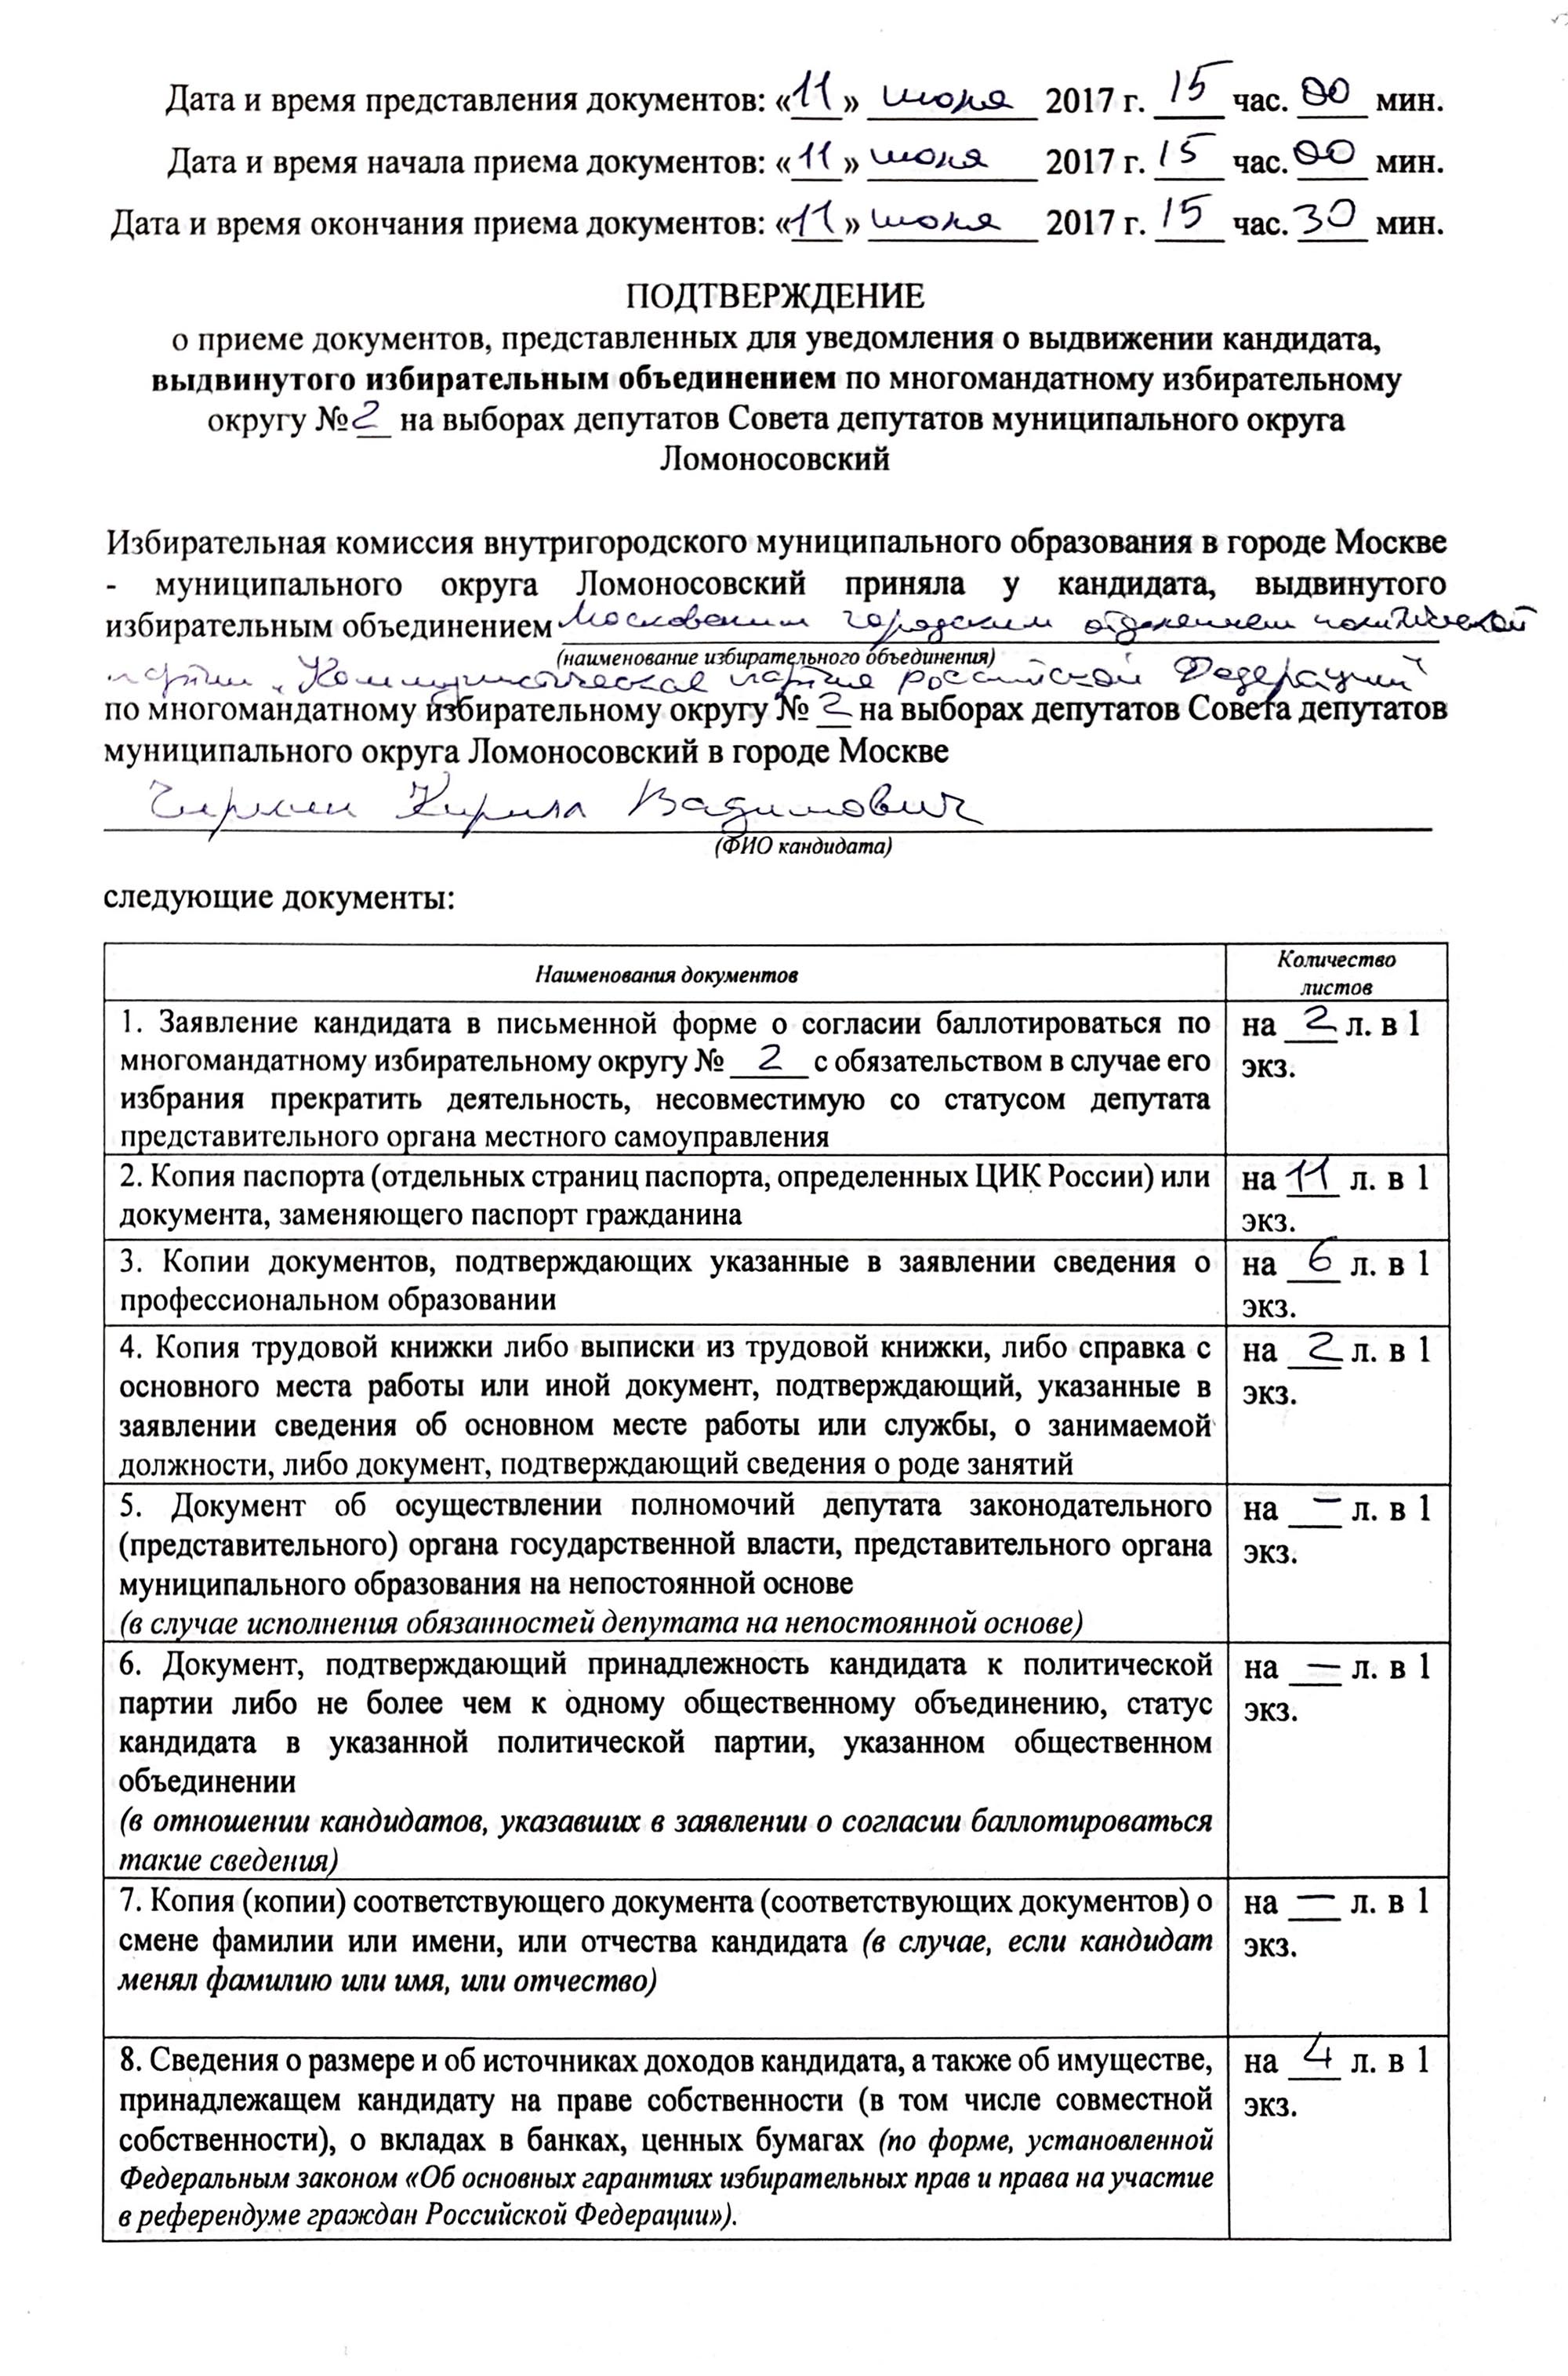 Это подтверждение от ТИК Ломоносовского округа, что мои документы приняли. Список документов внушительный